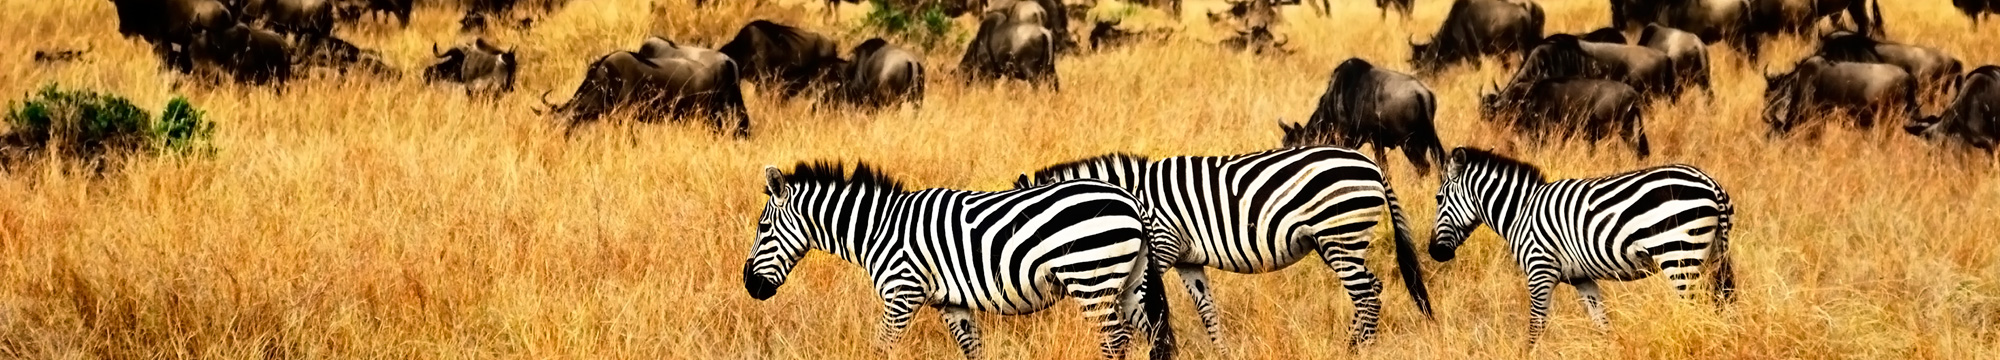 Zebres zebras en Kenia Mediviatges